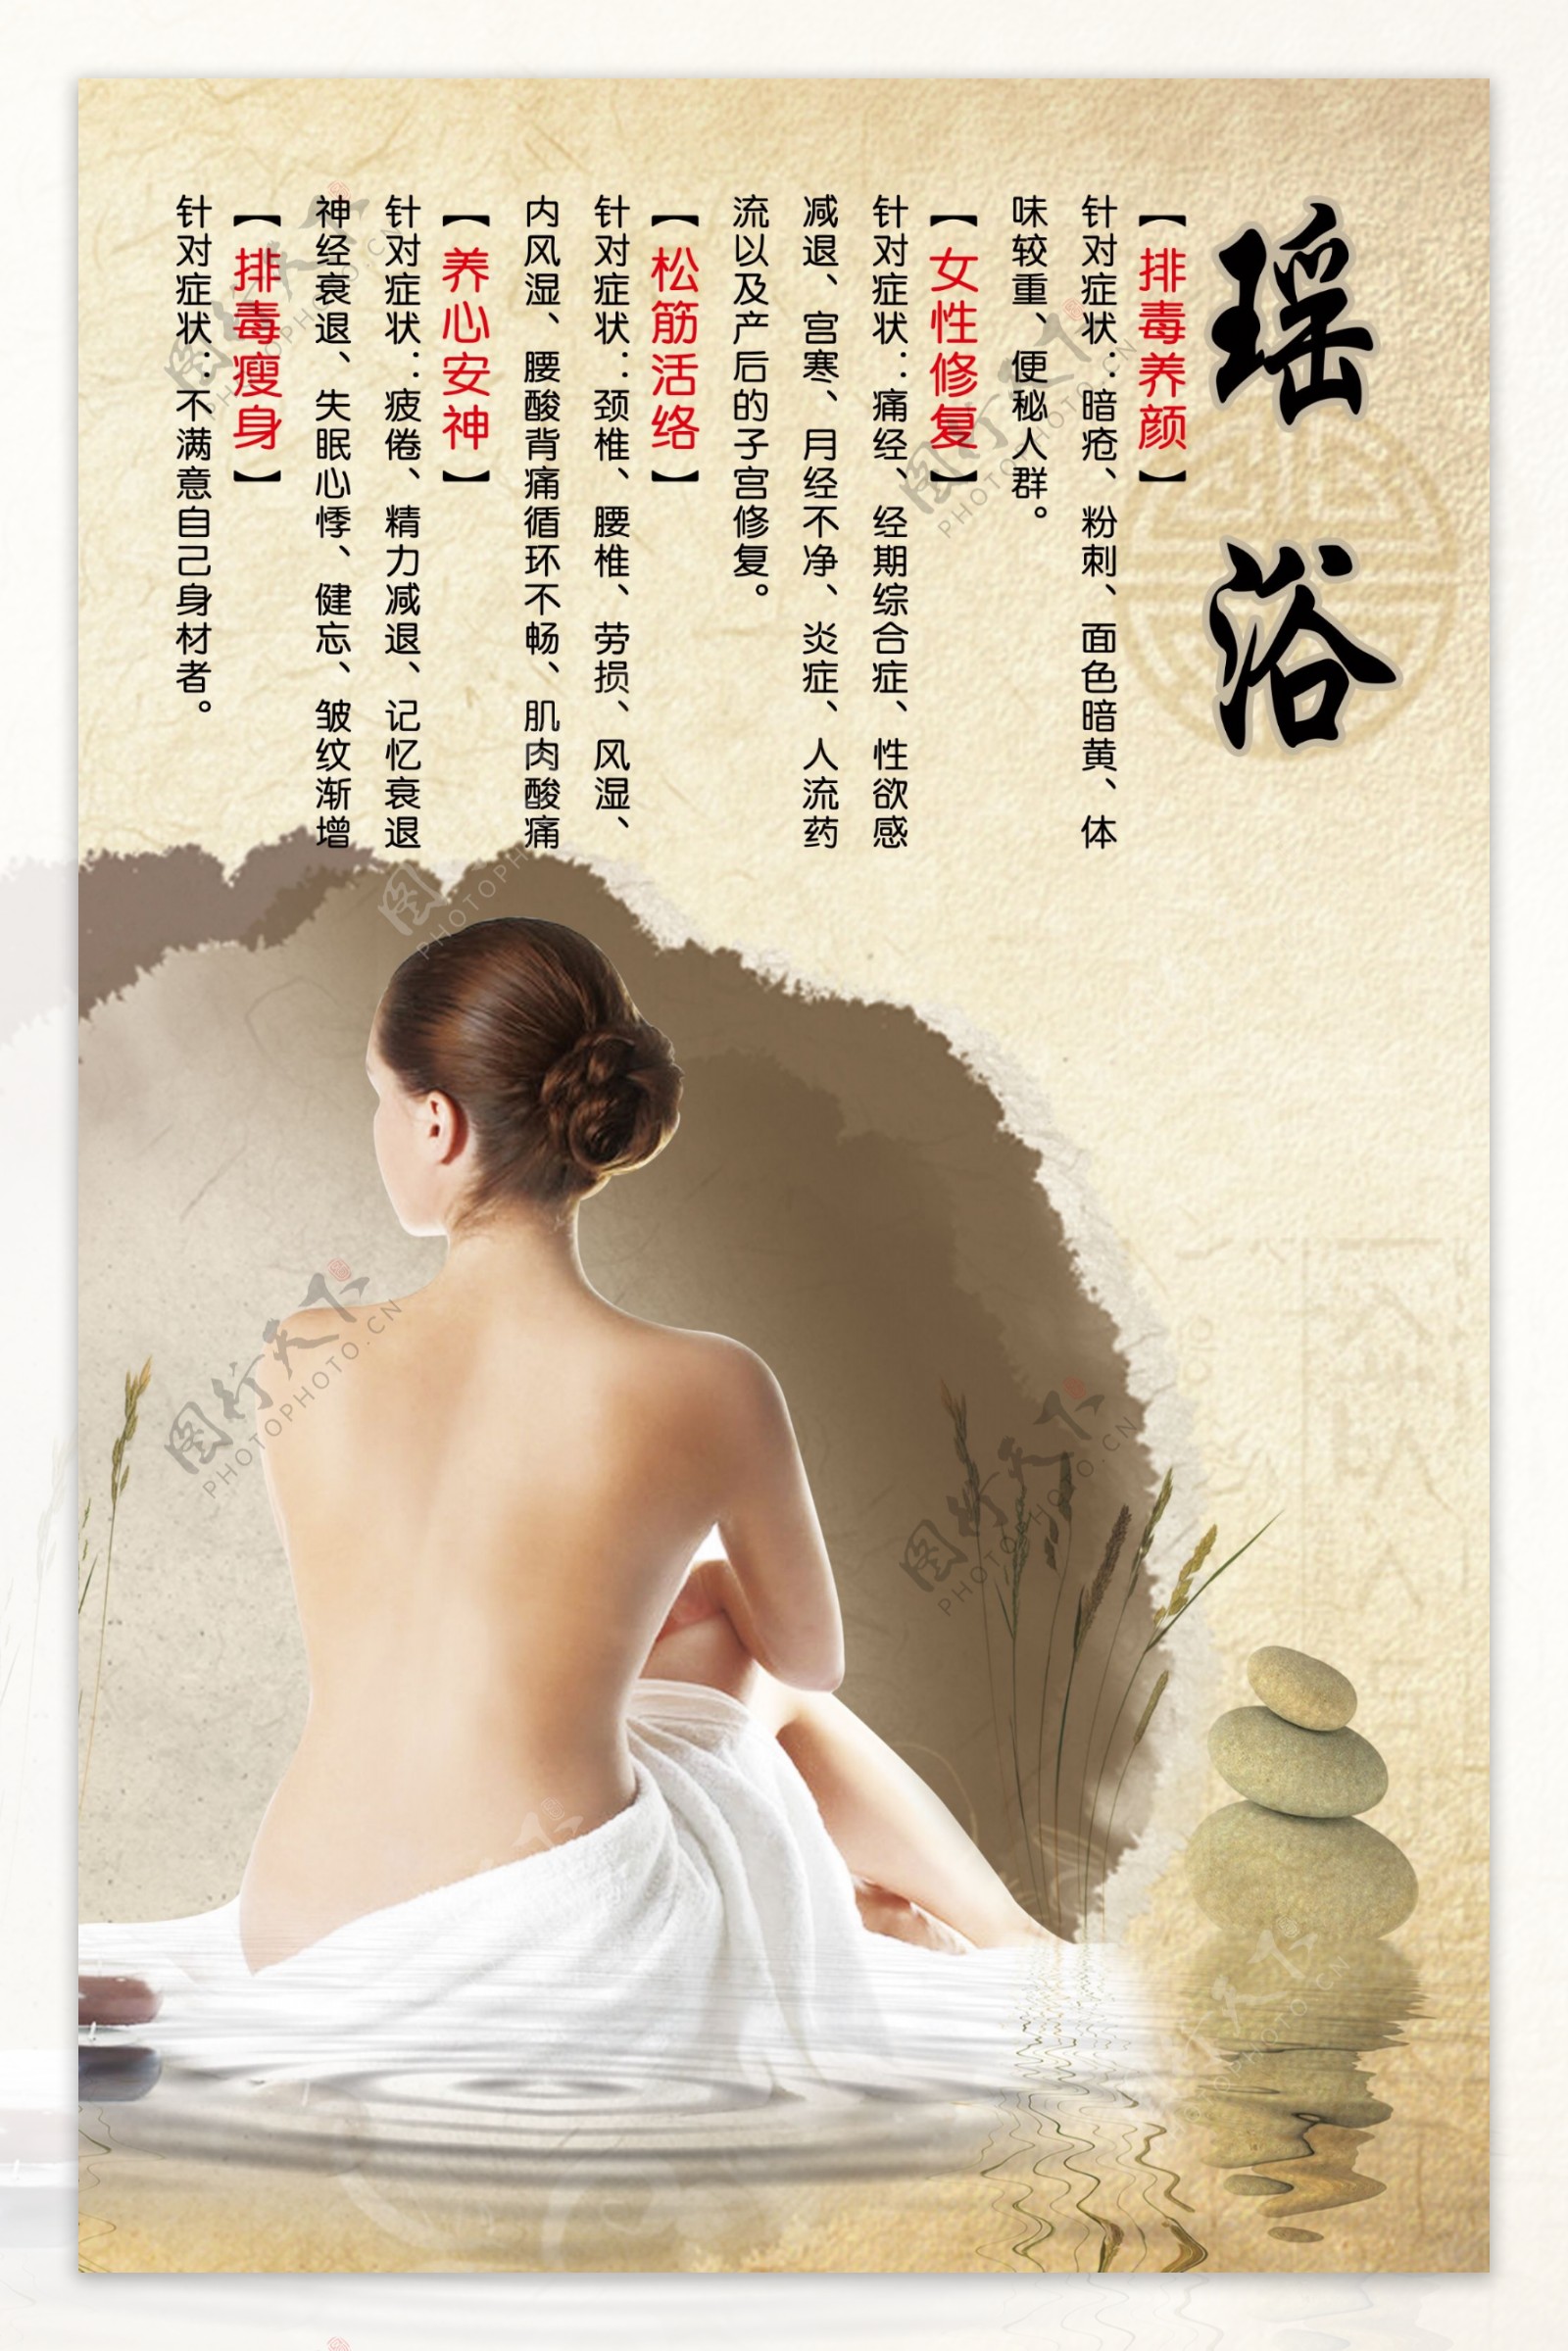 中国风瑶浴泡澡海报设计